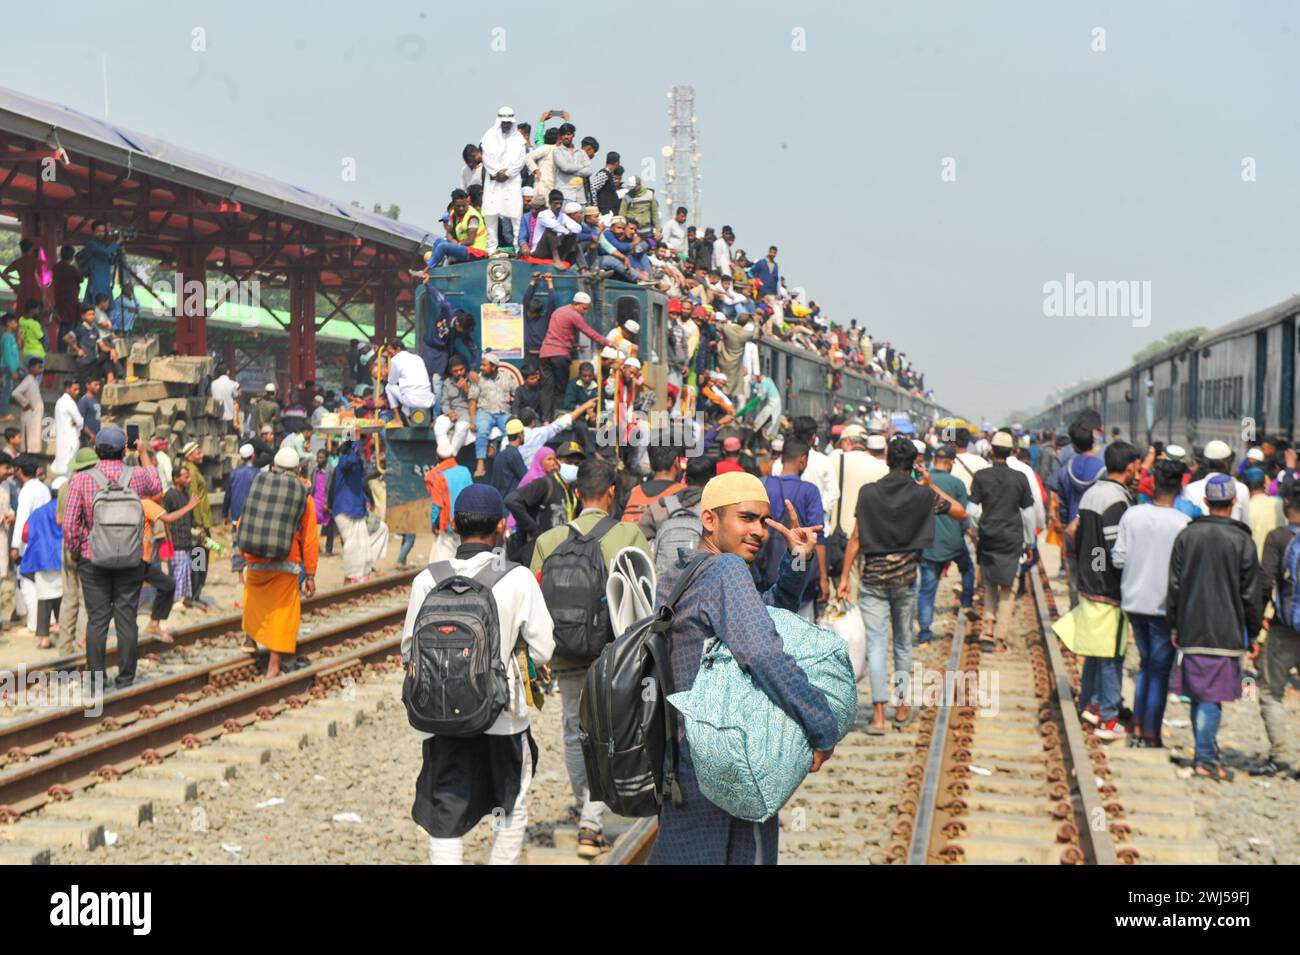 Tausende muslimischer Gläubiger kehren in einem überfüllten Zug nach Hause zurück, nachdem sie das letzte Gebet von Bishwa Ijtema in der 2. Phase besucht haben, die nach dem Hajj in Mekka als zweitgrößte muslimische Versammlung der Welt gilt. Tongi, am Stadtrand von Dhaka. Bangladesch. Stockfoto